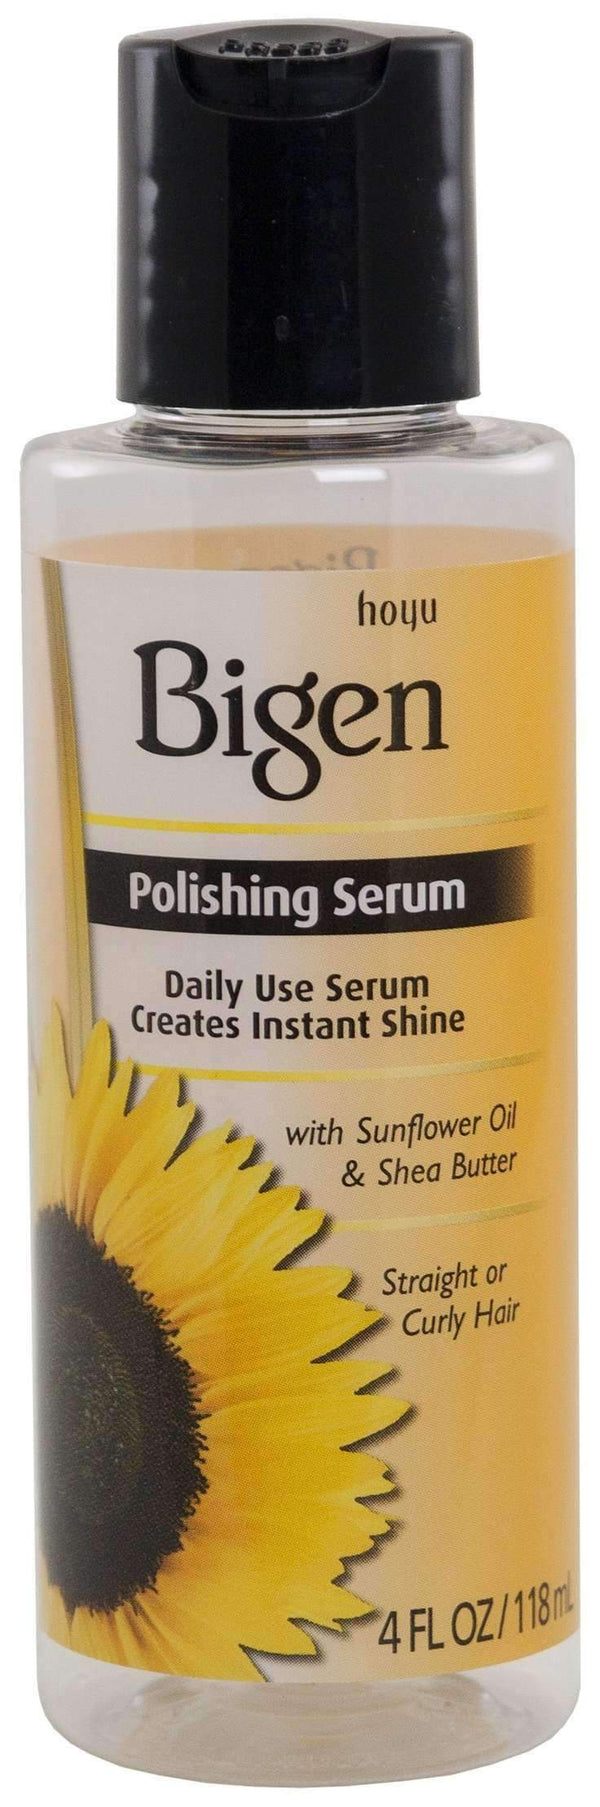 Bigen Polishing Serum - Deluxe Beauty Supply